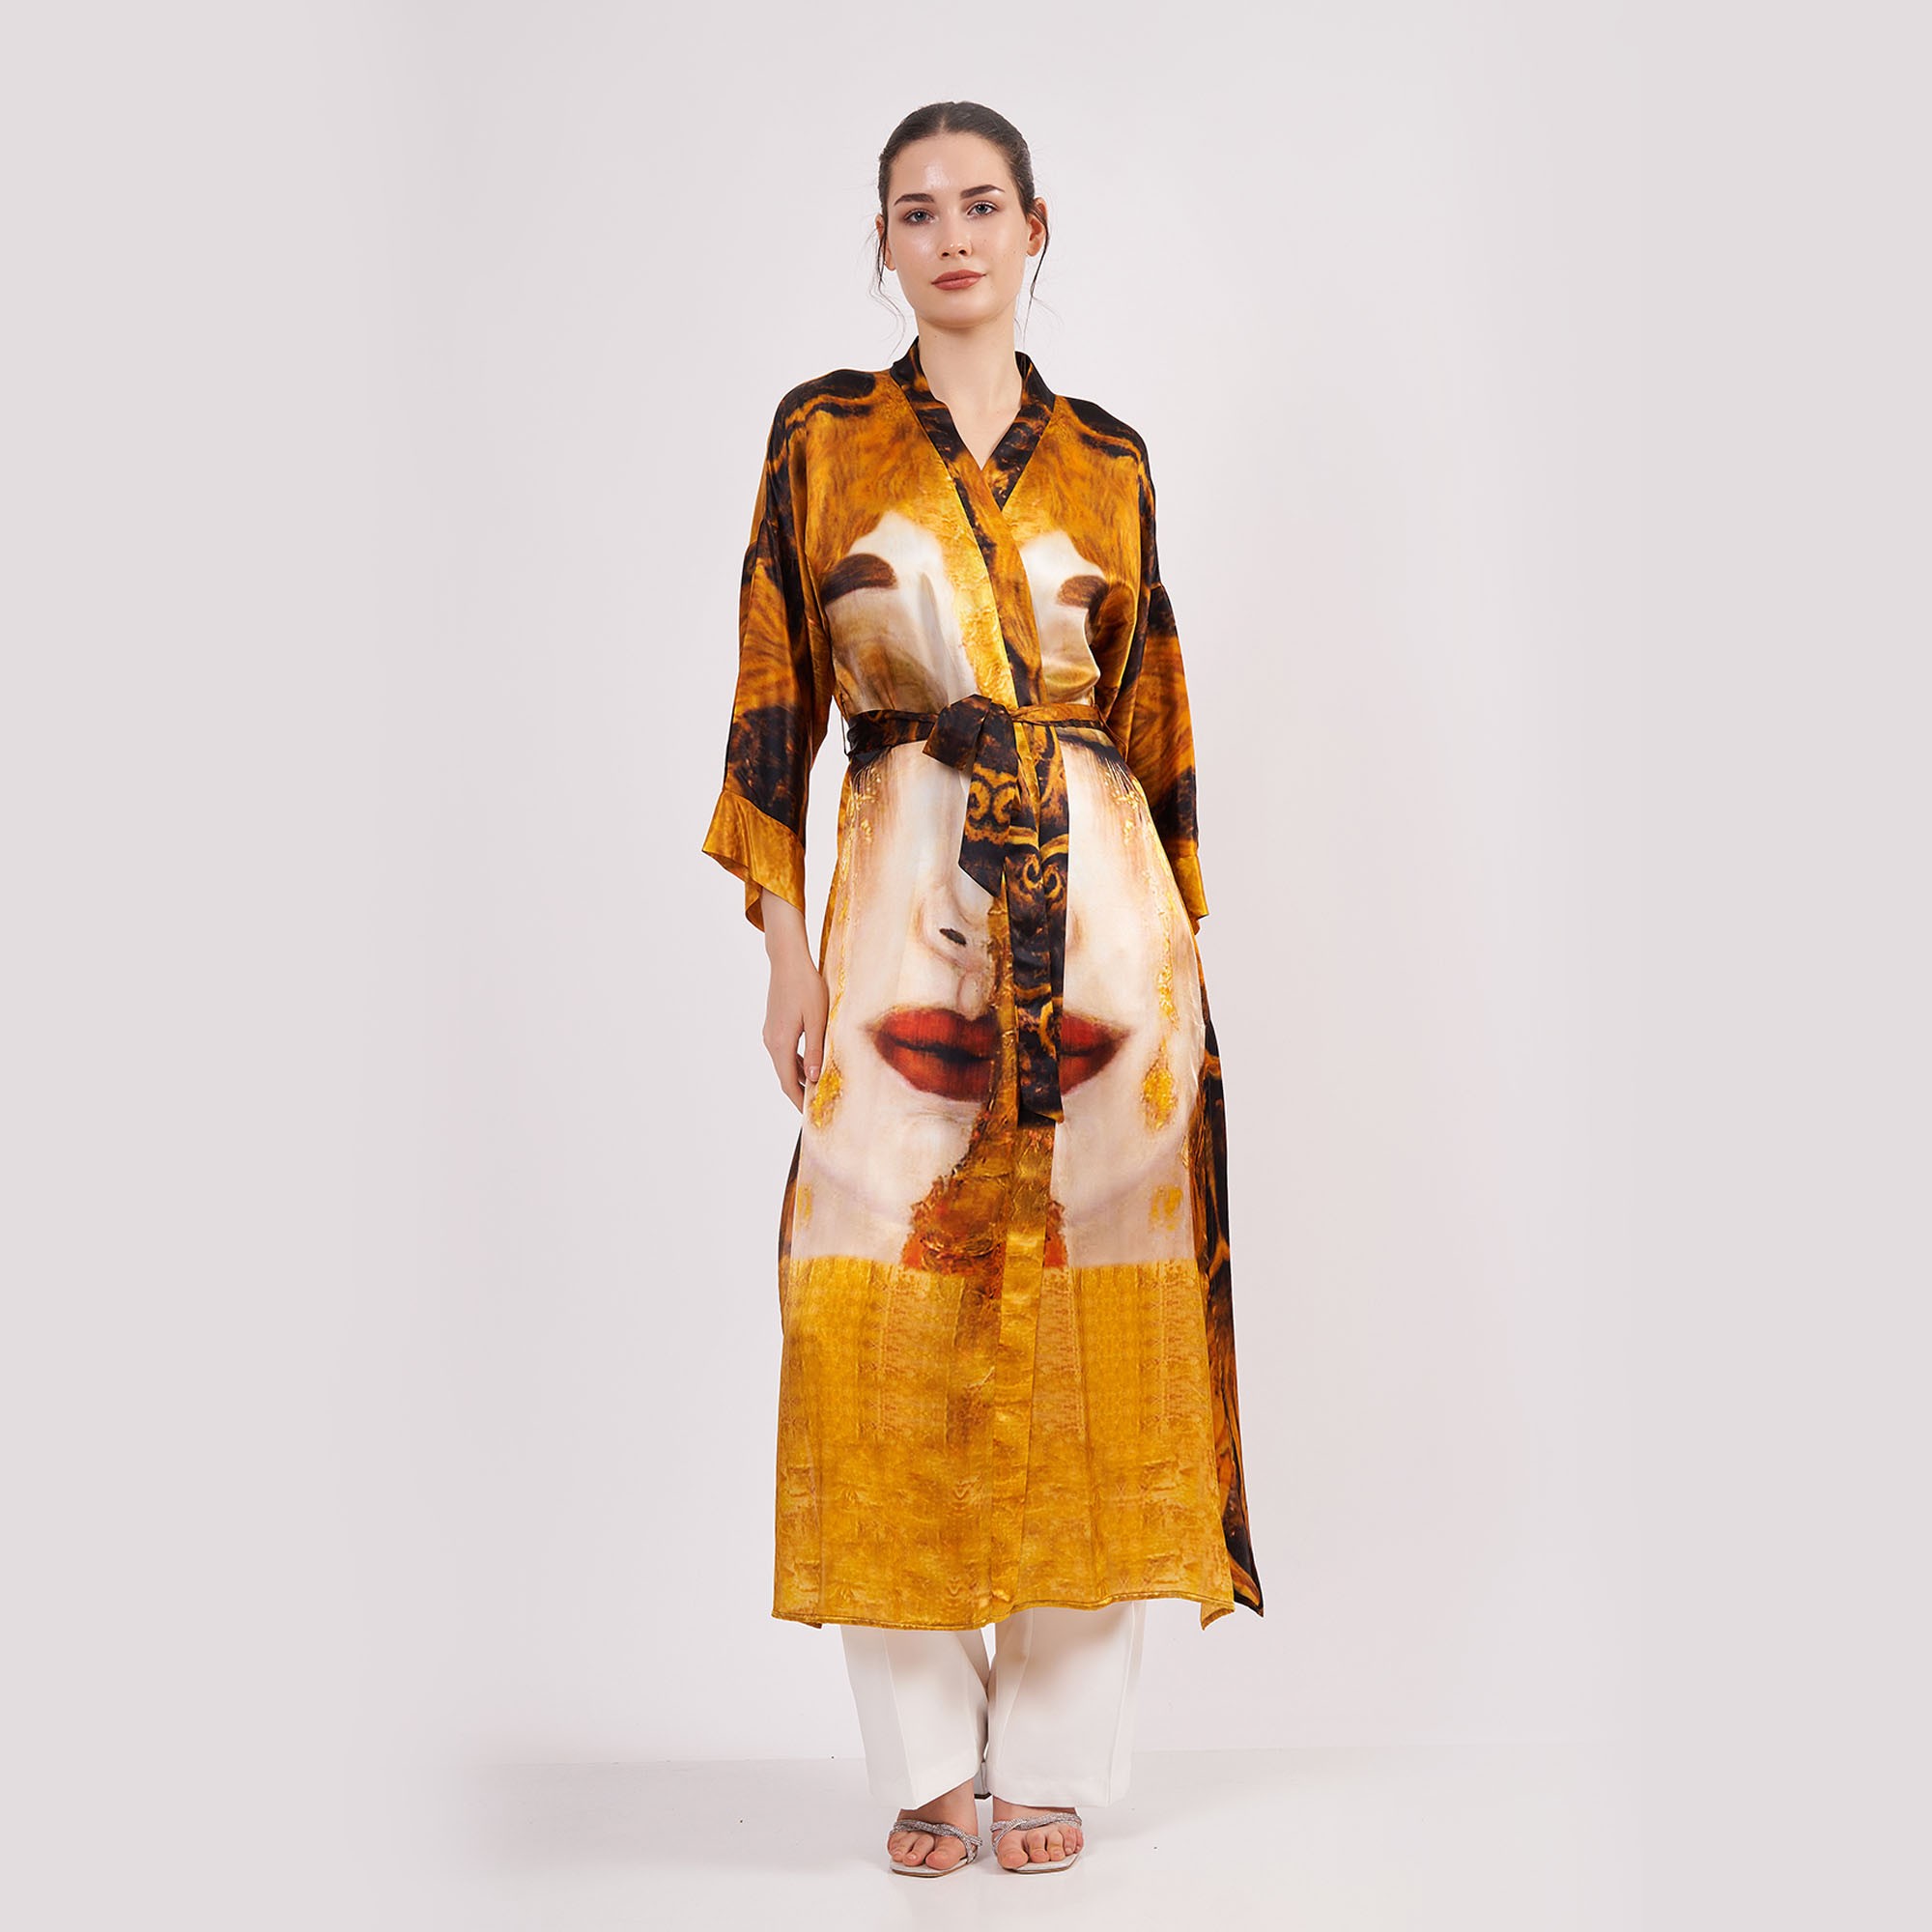 Saf İpek Uzun Kimono Kaftan | Freya's Tears - Altın Gözyaşları | Nomads Felt